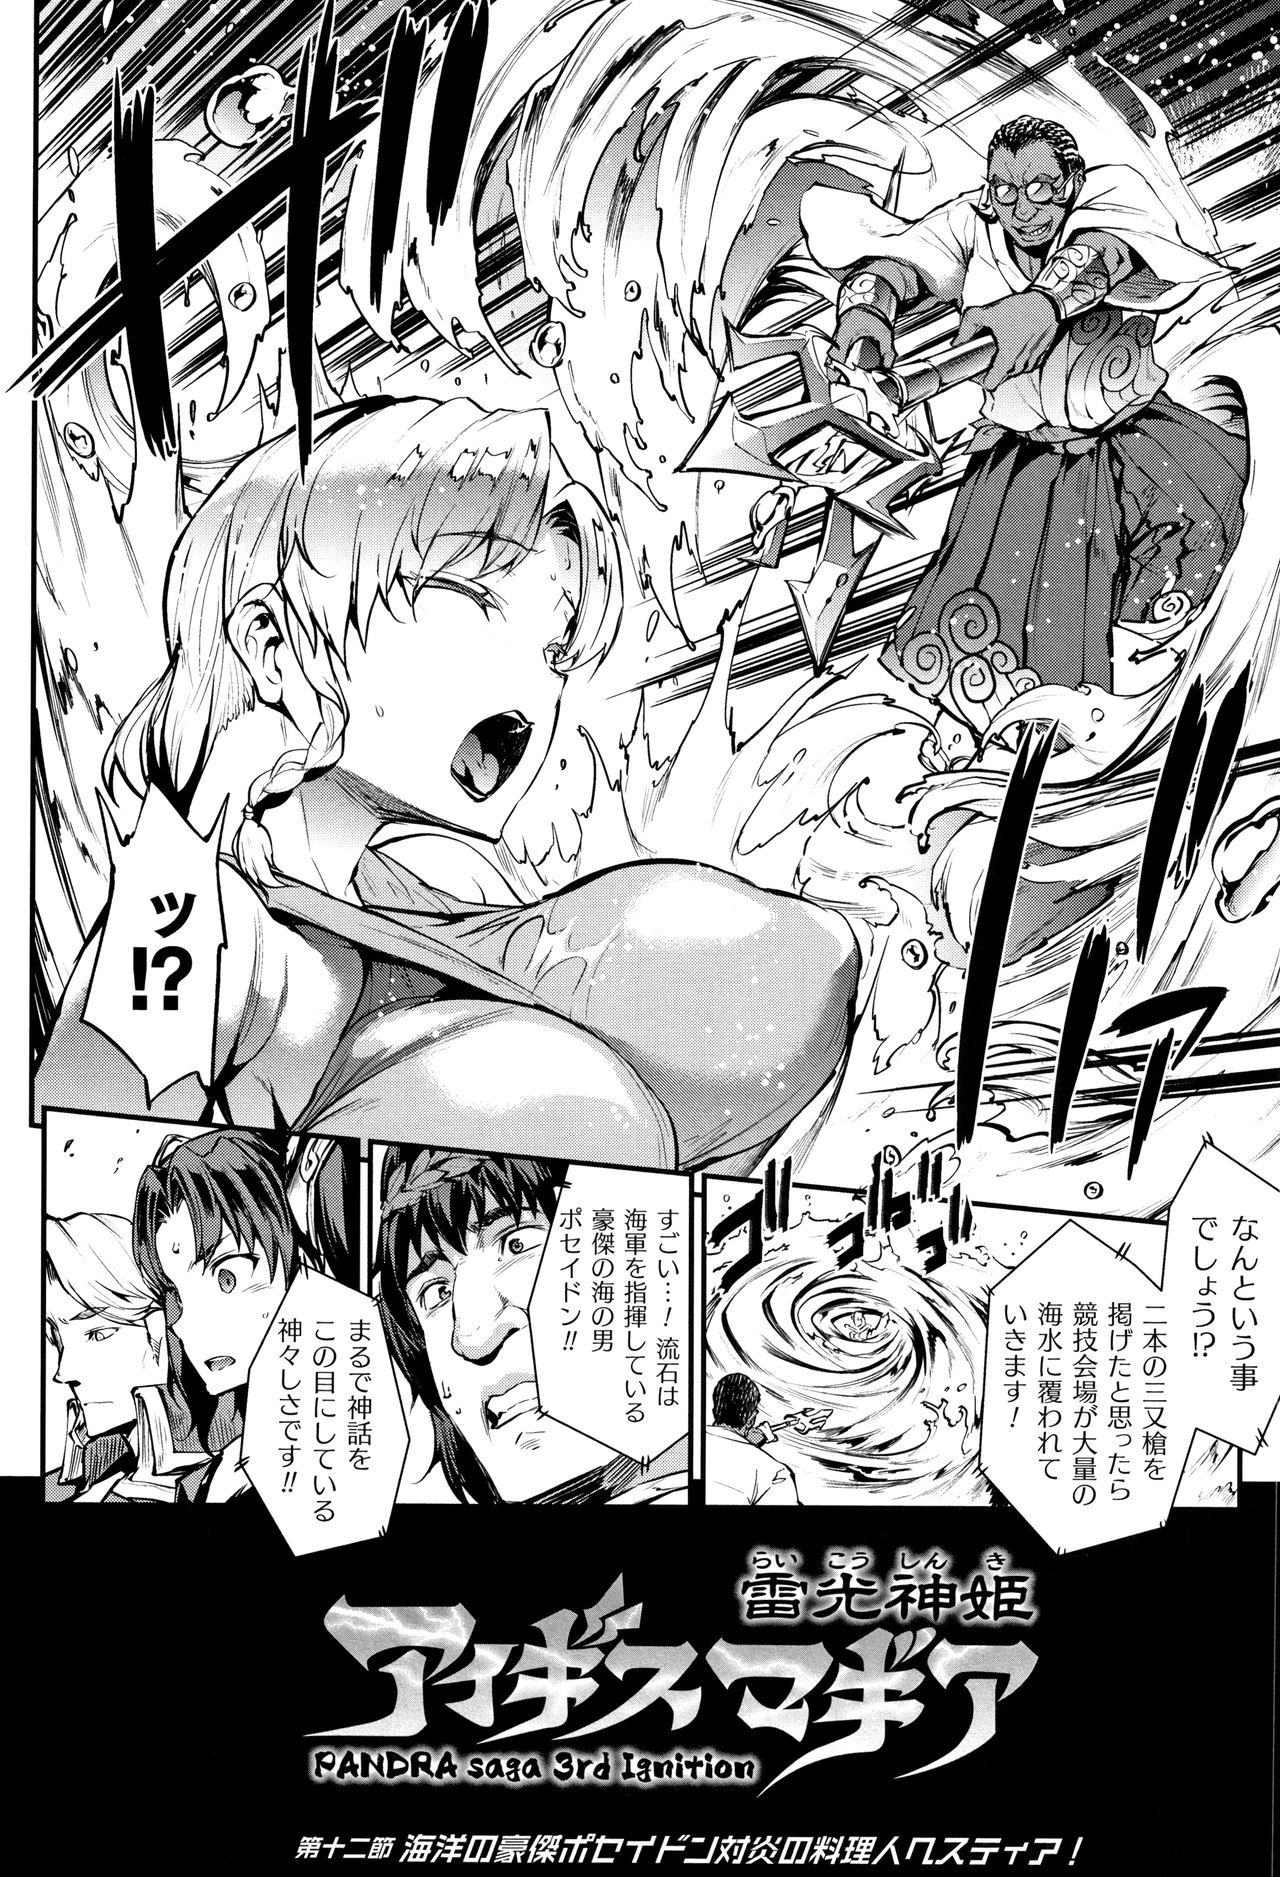 [エレクトさわる] 雷光神姫アイギスマギア II -PANDRA saga 3rd ignition- + 4Pリーフレット